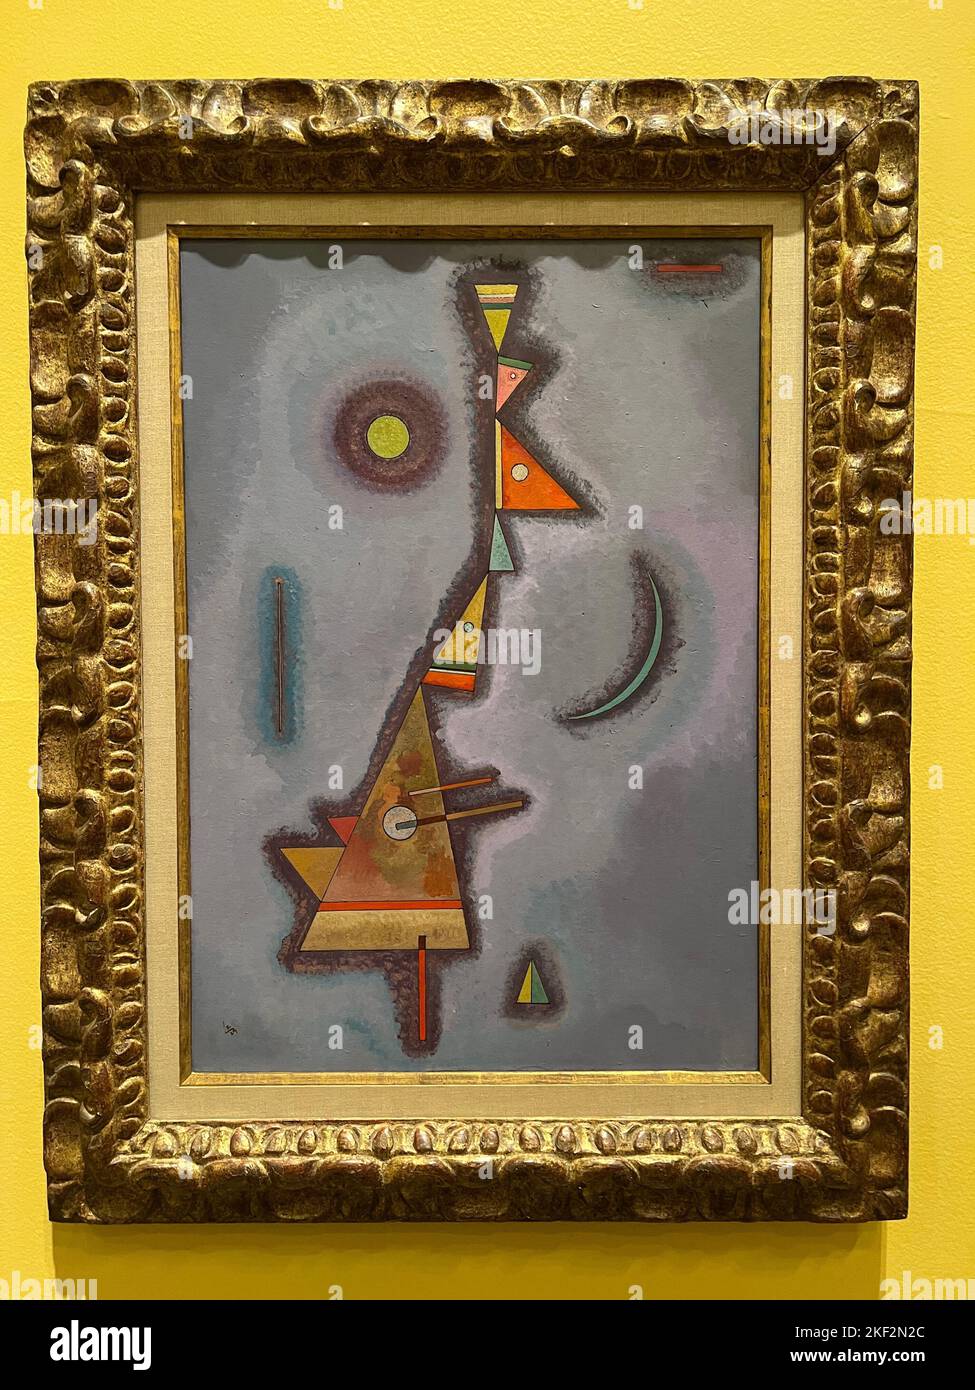 Stubborn, 1929, oil on board. Vasily Kandinsky, The Brooklyn Museum. Stock Photo